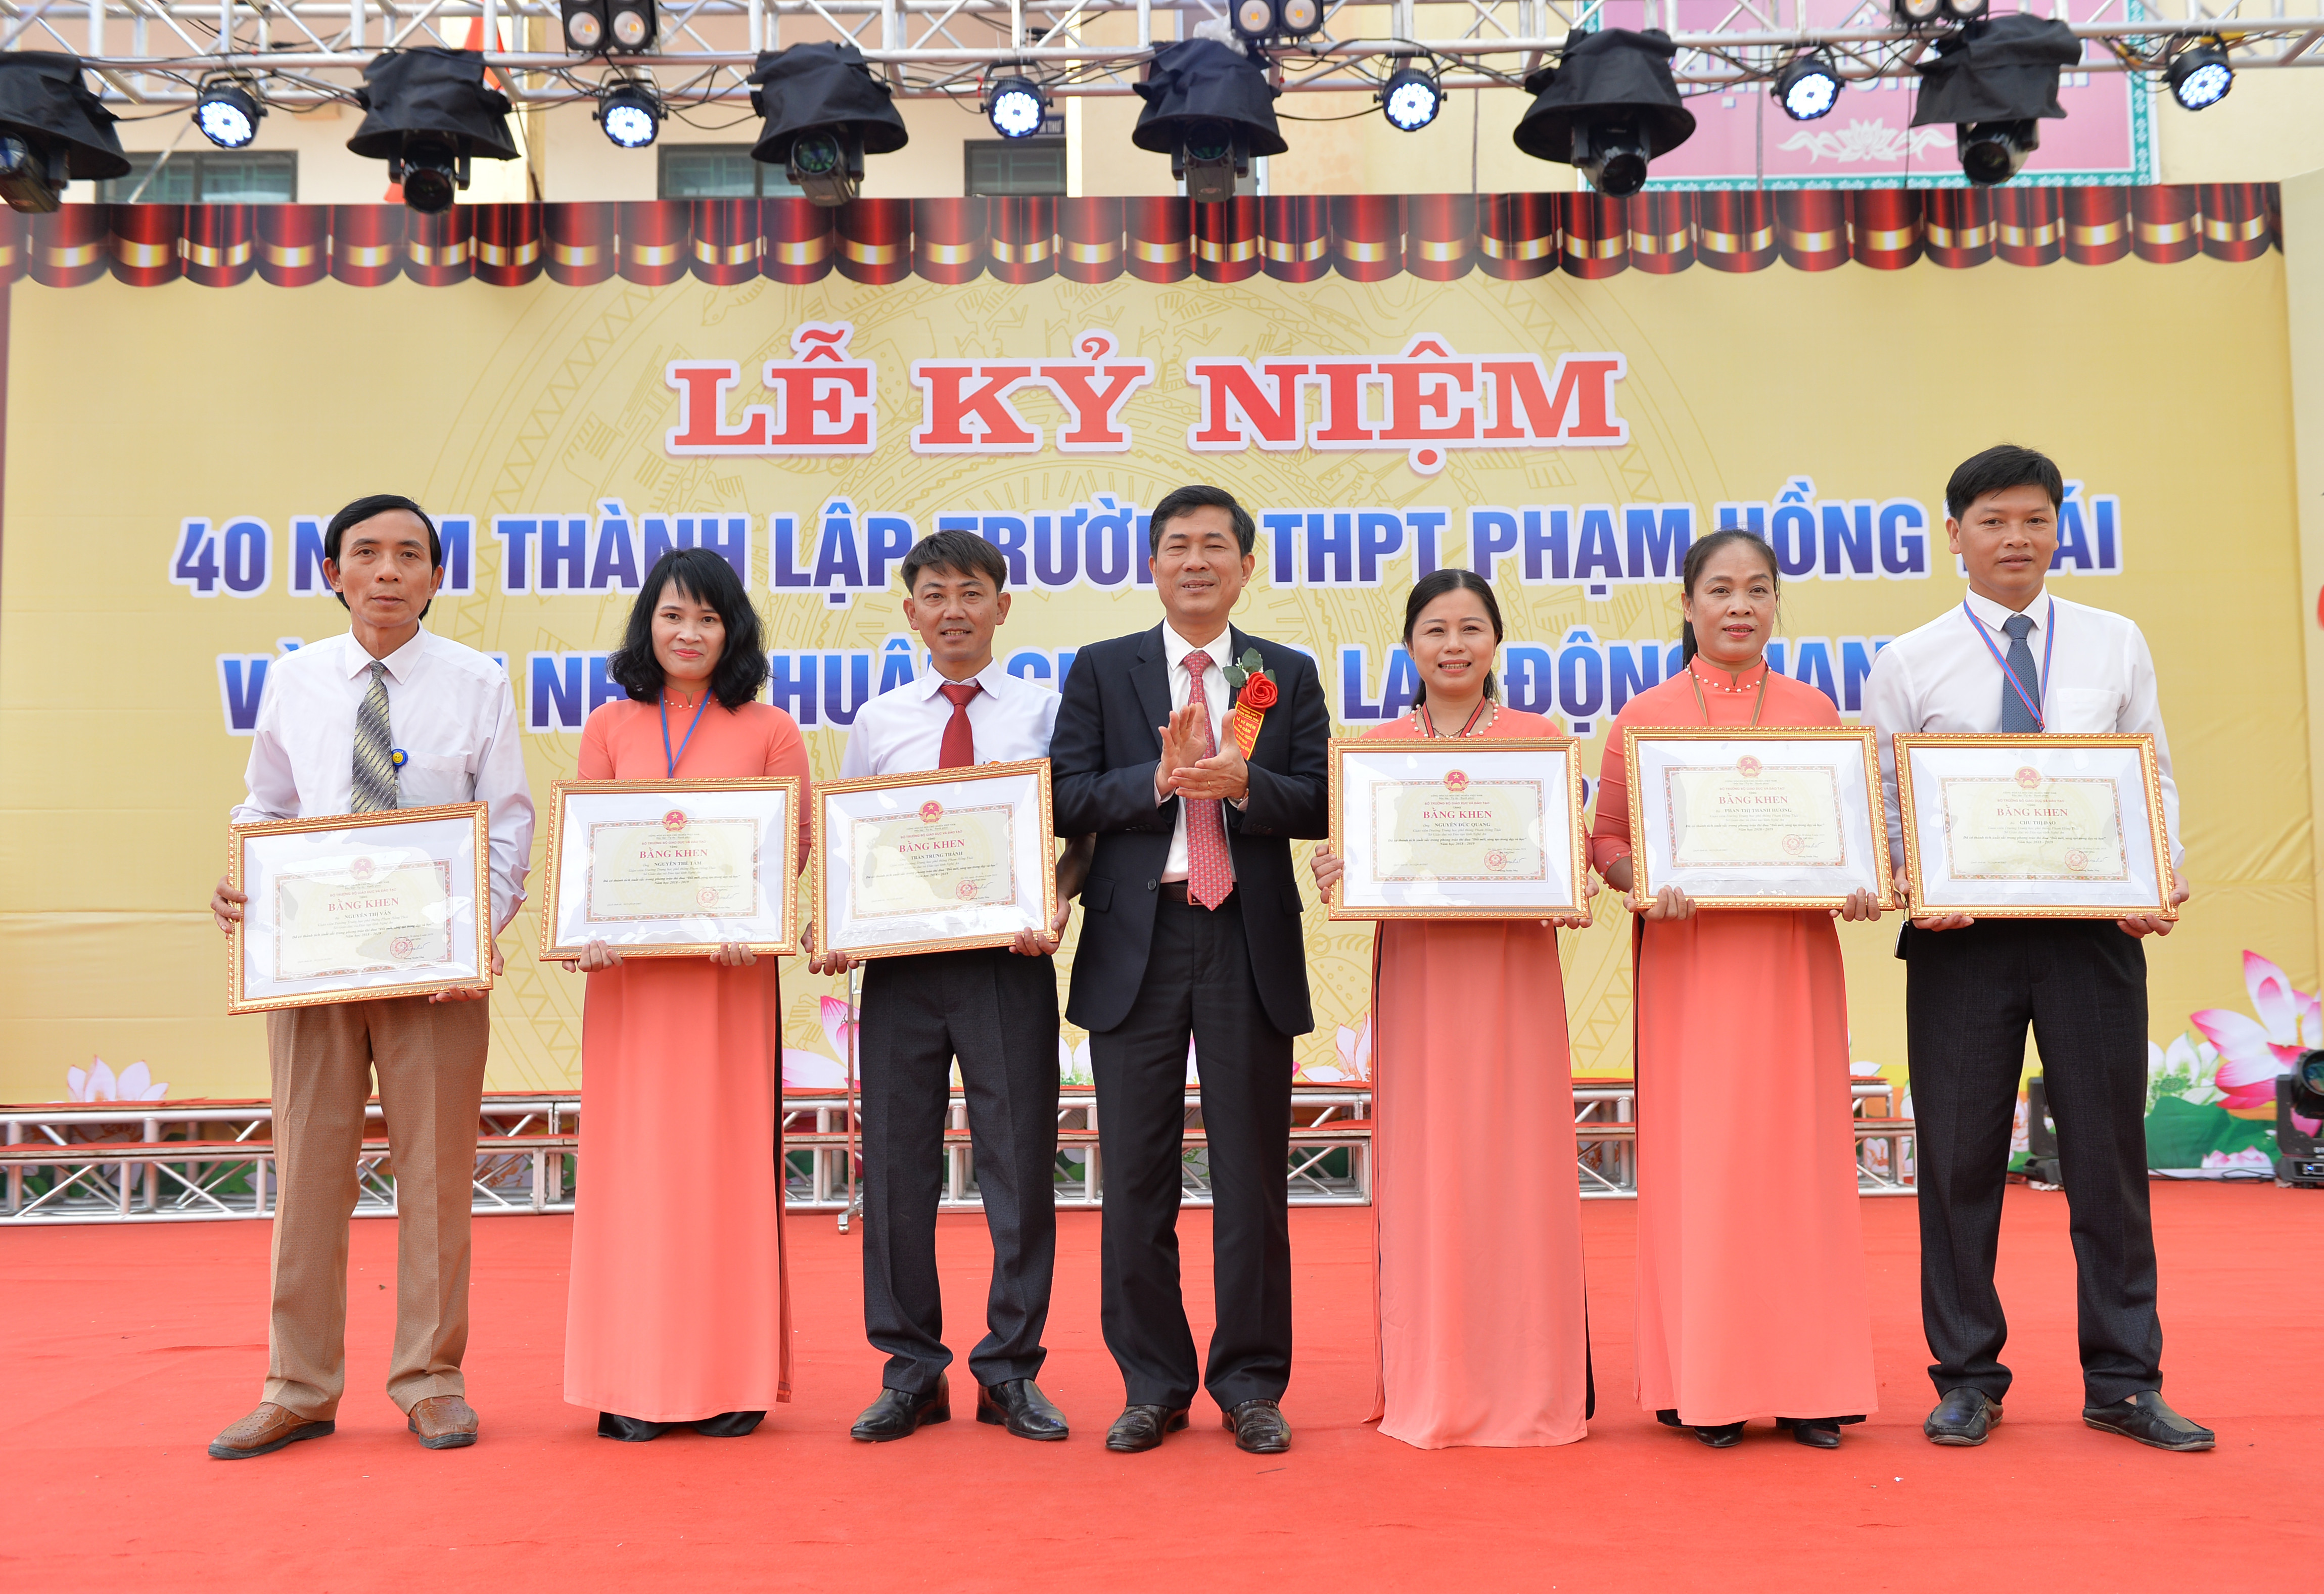 -Thừa ủy quyền của Bộ trưởng Bộ Giáo dục và Đào tạo, đồng chí Thái Văn Thành - Ủy viên BCH Đảng bộ tỉnh, Giám đốc Sở Giáo dục và Đào tạo trao các cá nhân có thành tích xuất sắc trong công tác dạy học. 